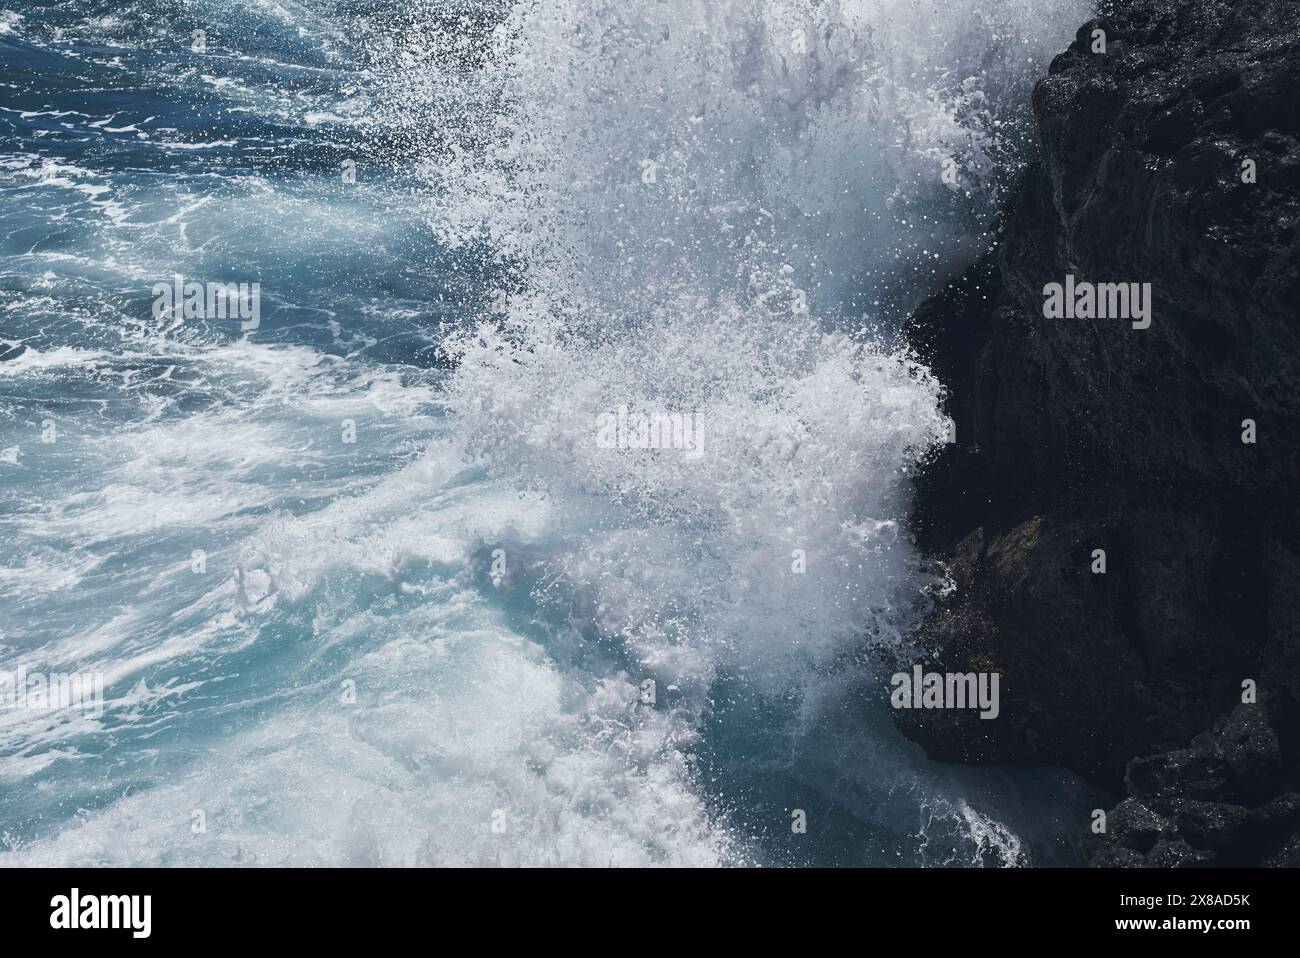 Waves crashing on rock Stock Photo